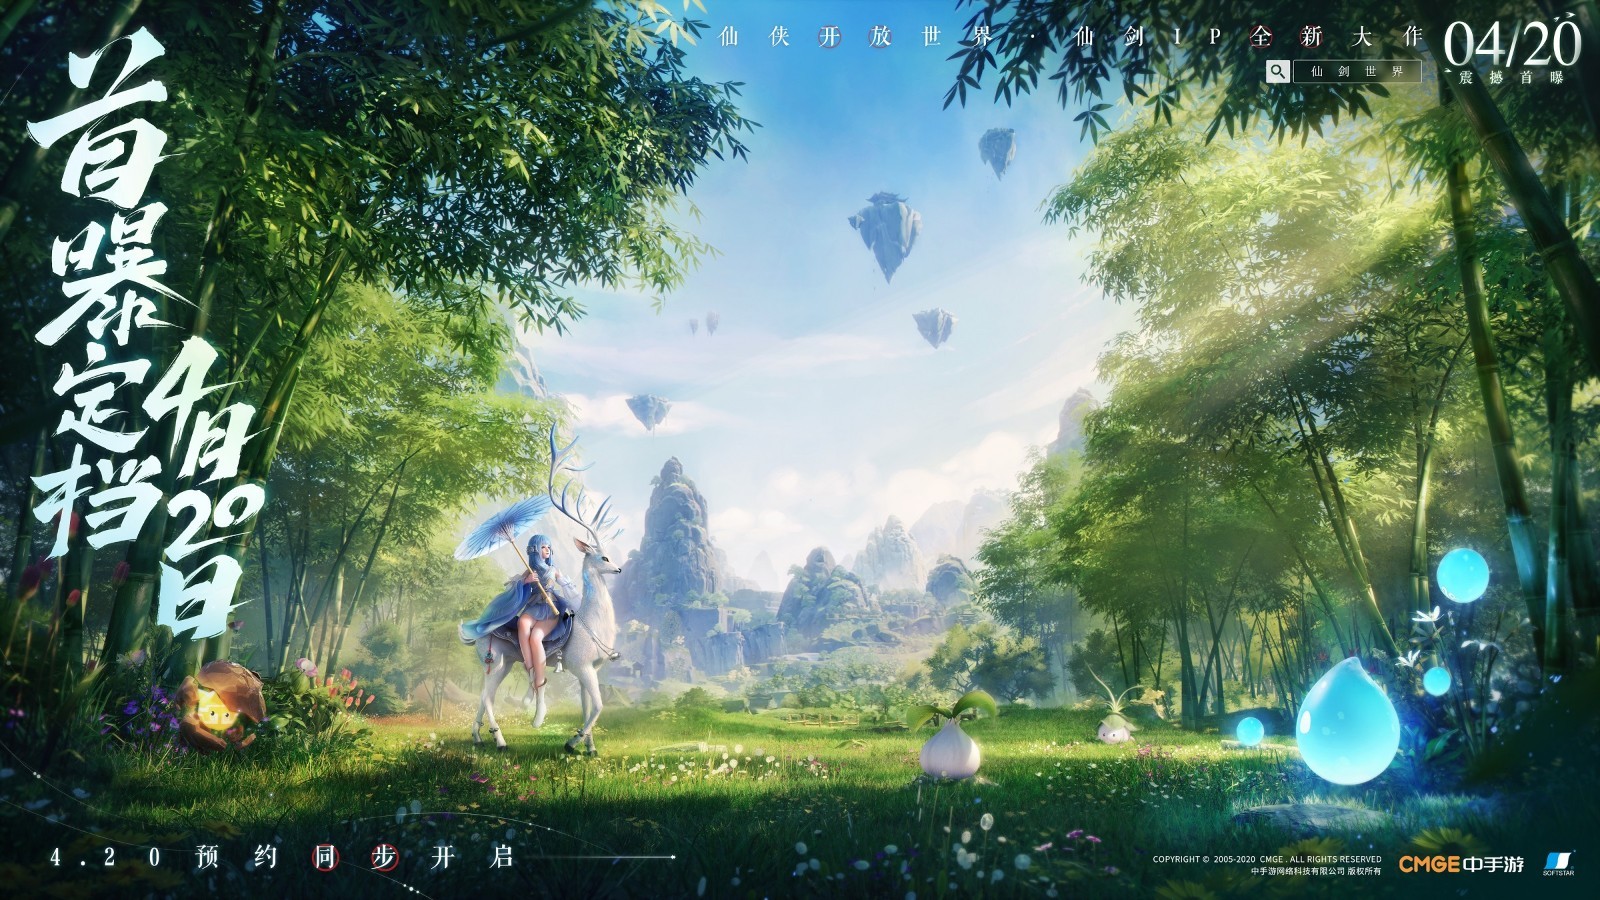 开放世界元宇宙游戏《仙剑世界》4月20日发布概念PV